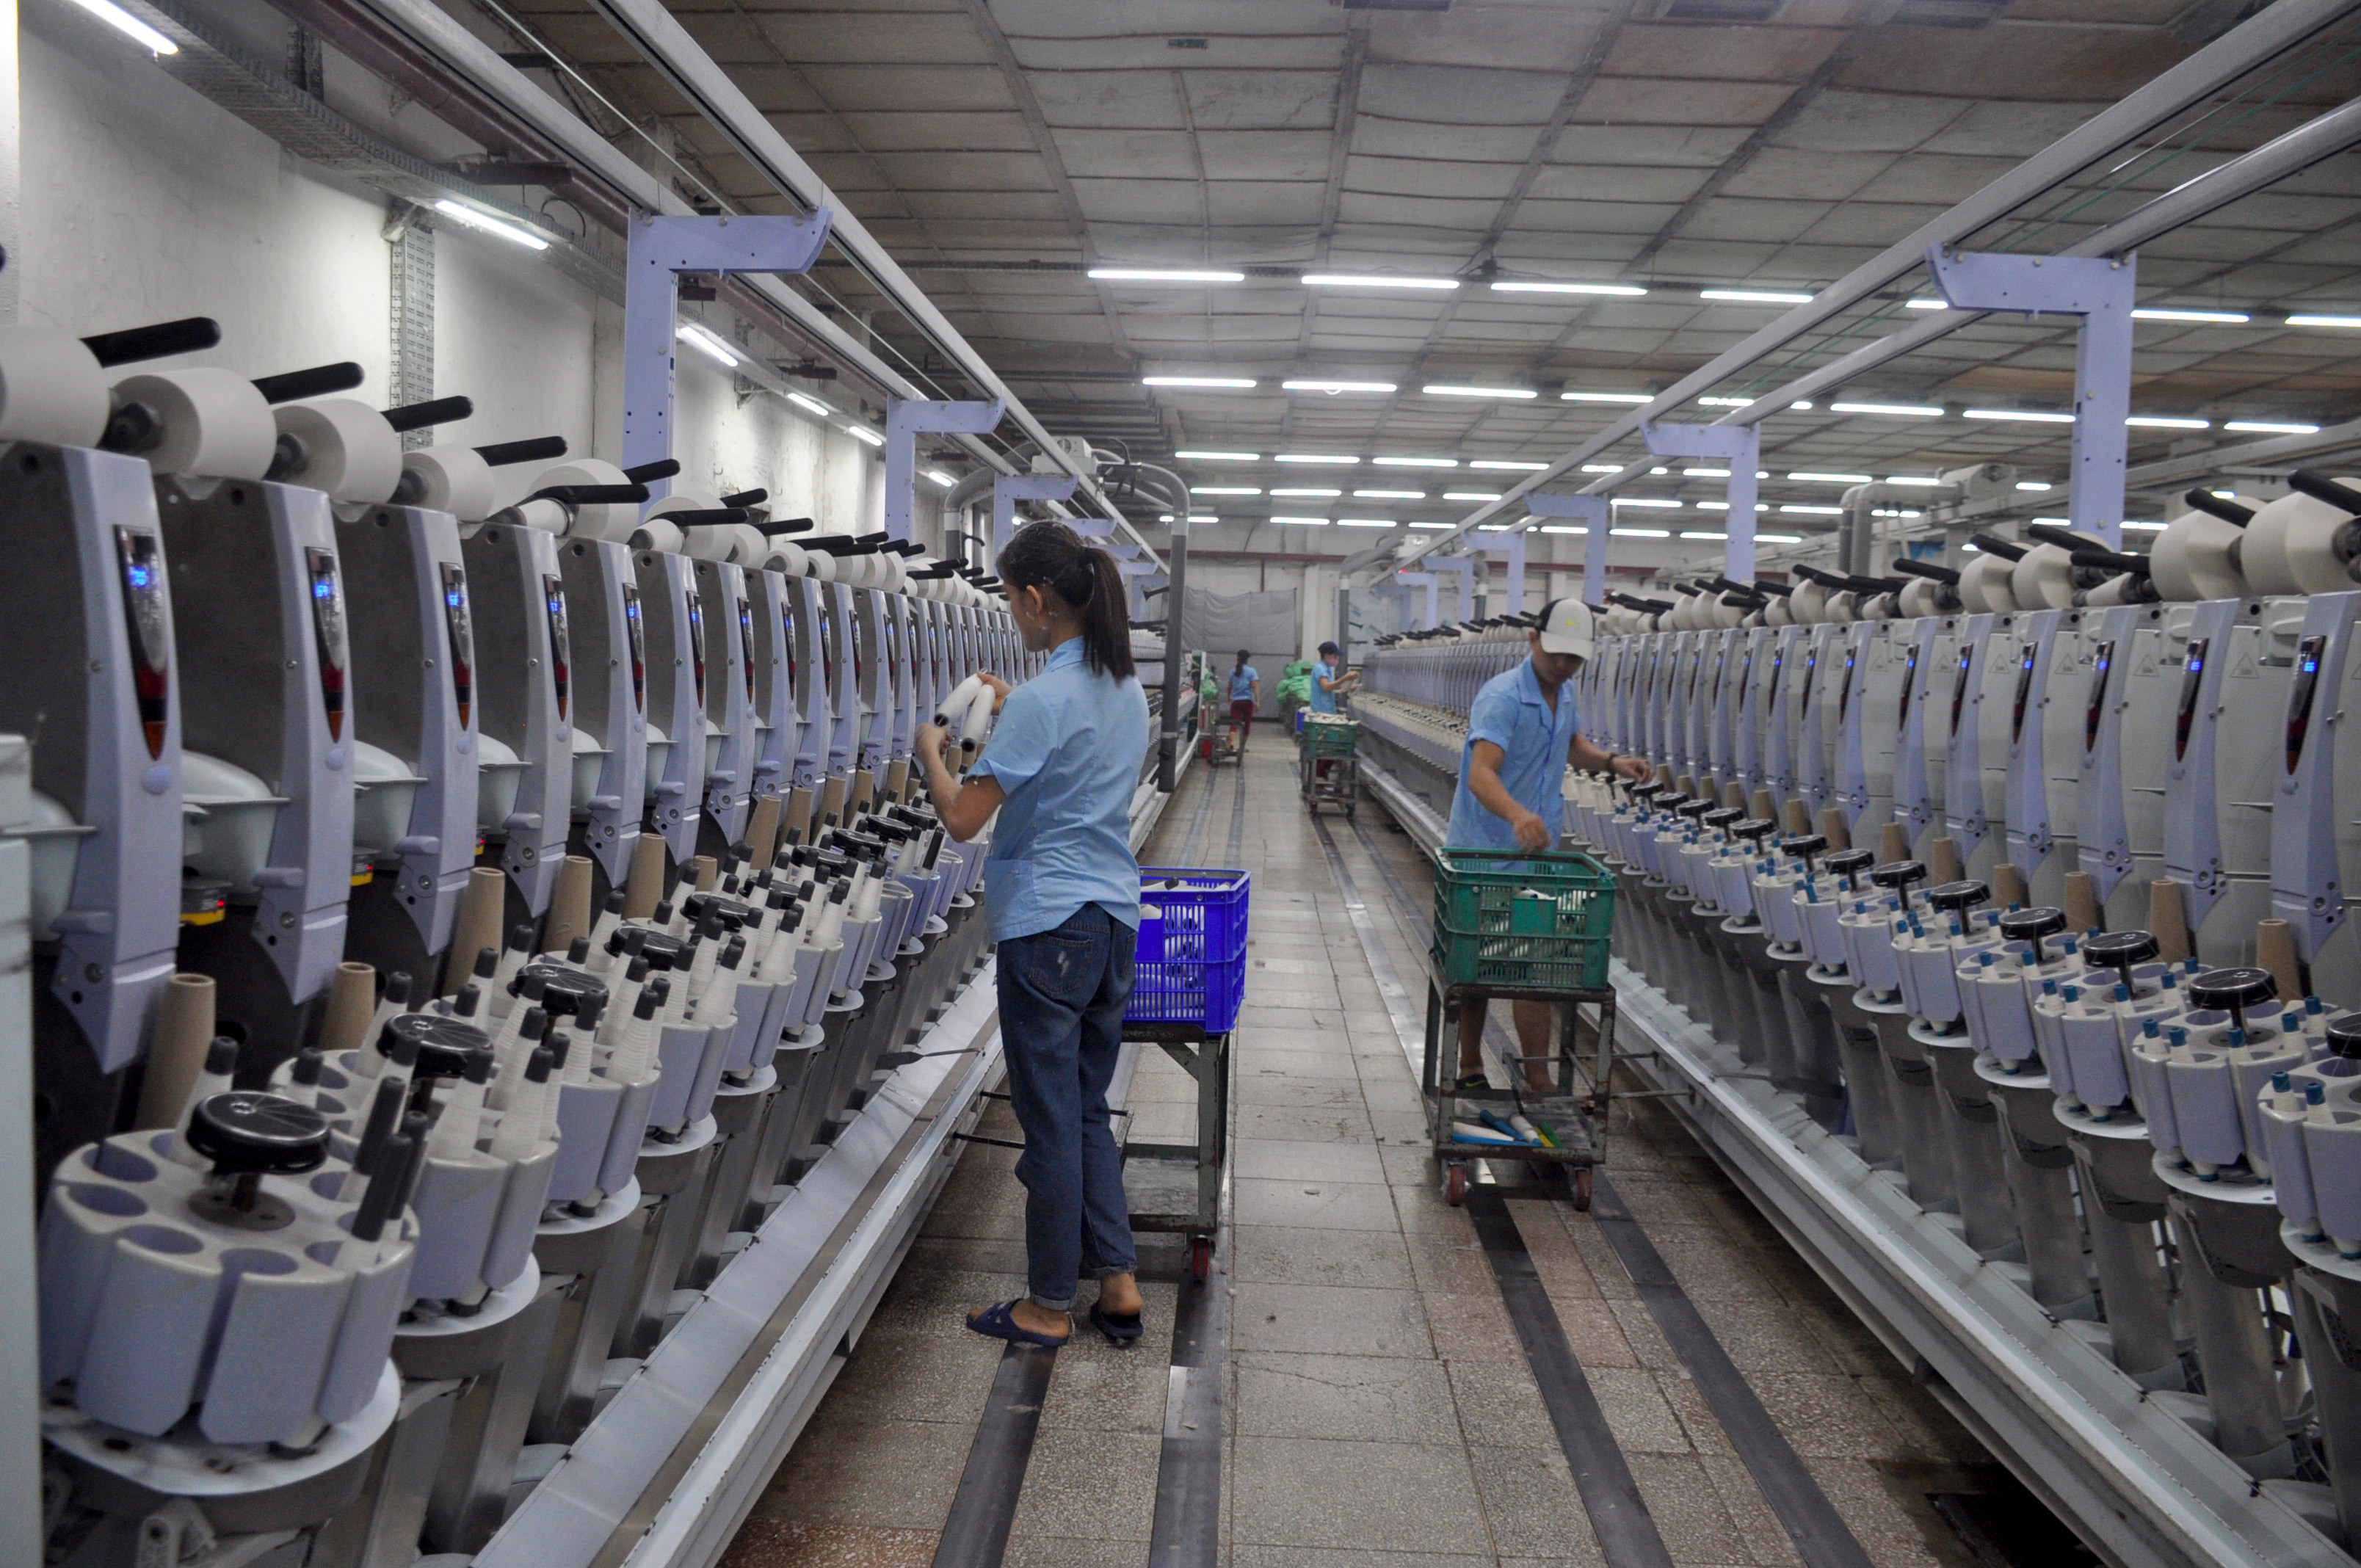 Thiếu lao động, hiện nhà máy sợi Hoàng Thị Loan chỉ có 1/3 công nhân đứng máy. Ảnh Thu Huyền